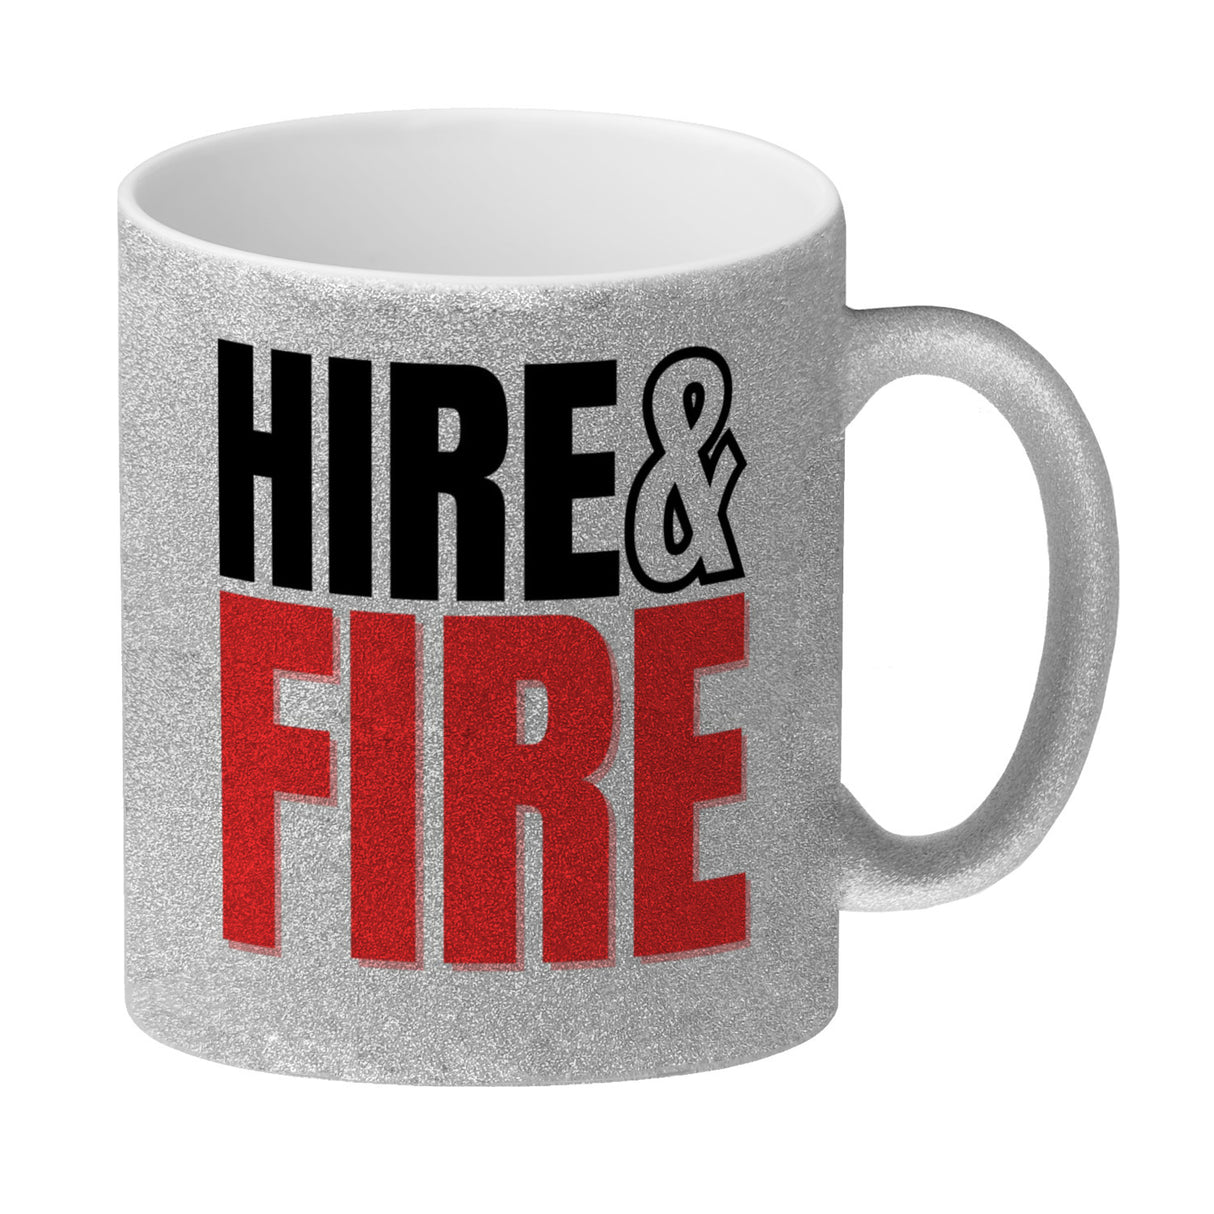 Chef und Boss Kaffeebecher mit Spruch Hire & fire